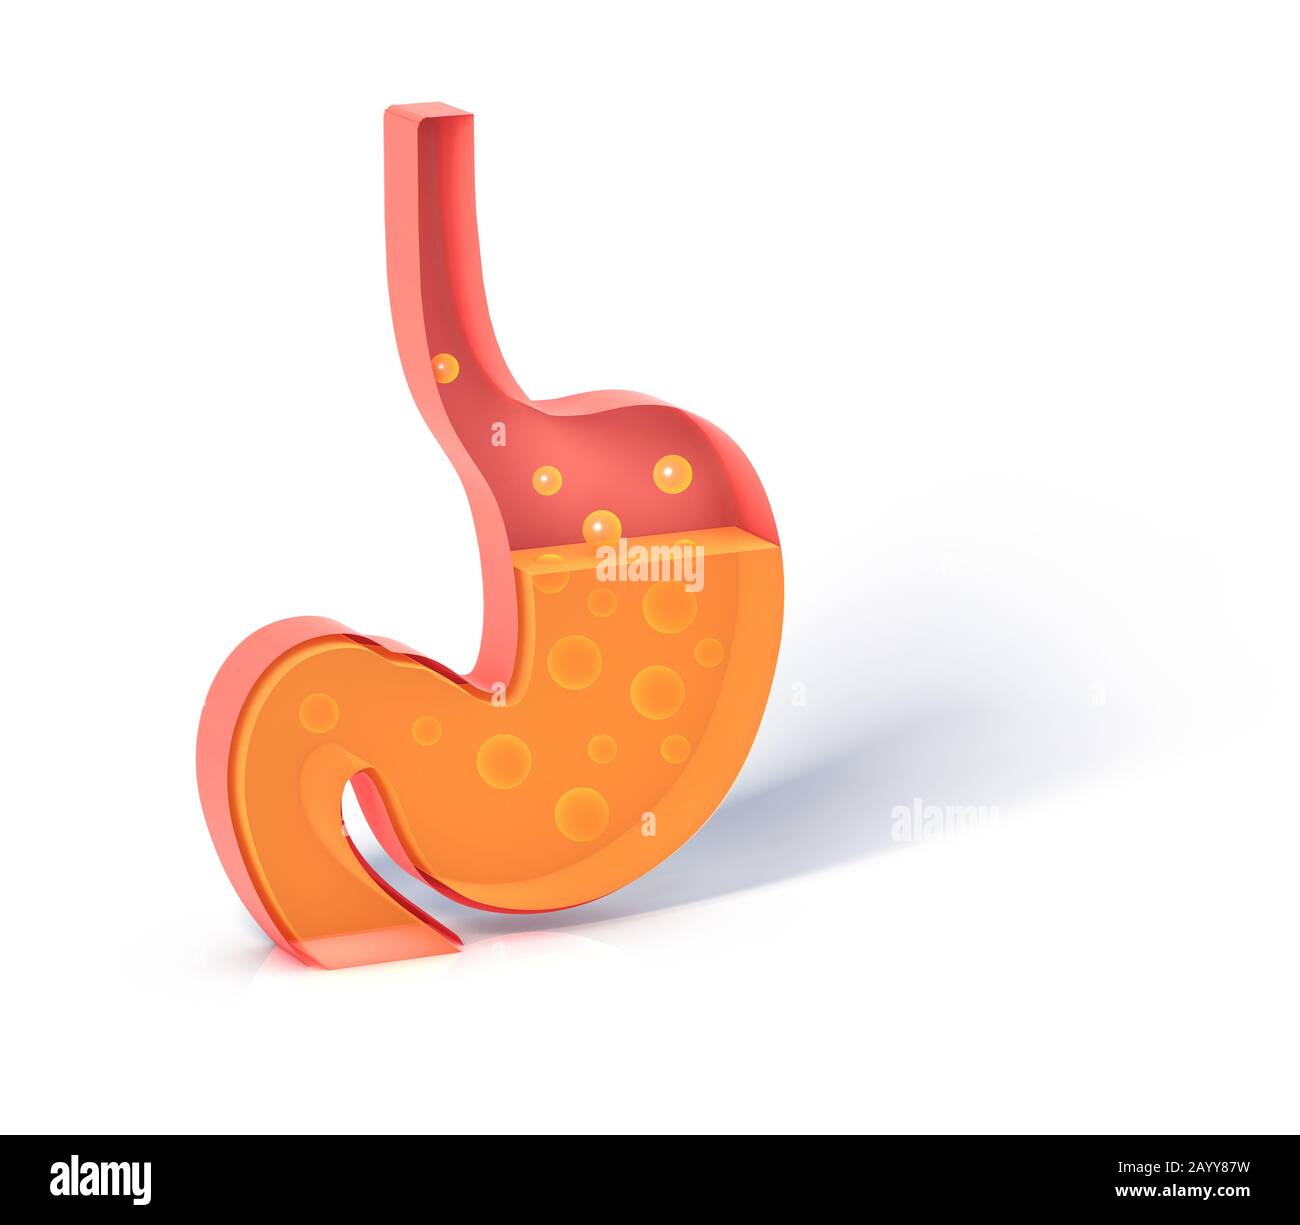 3D illustrazione dello stomaco che mostra l'interno che fa la digestione con i gas. Rappresentazione piatta con volume vuoto, silhouette isolata. Foto Stock